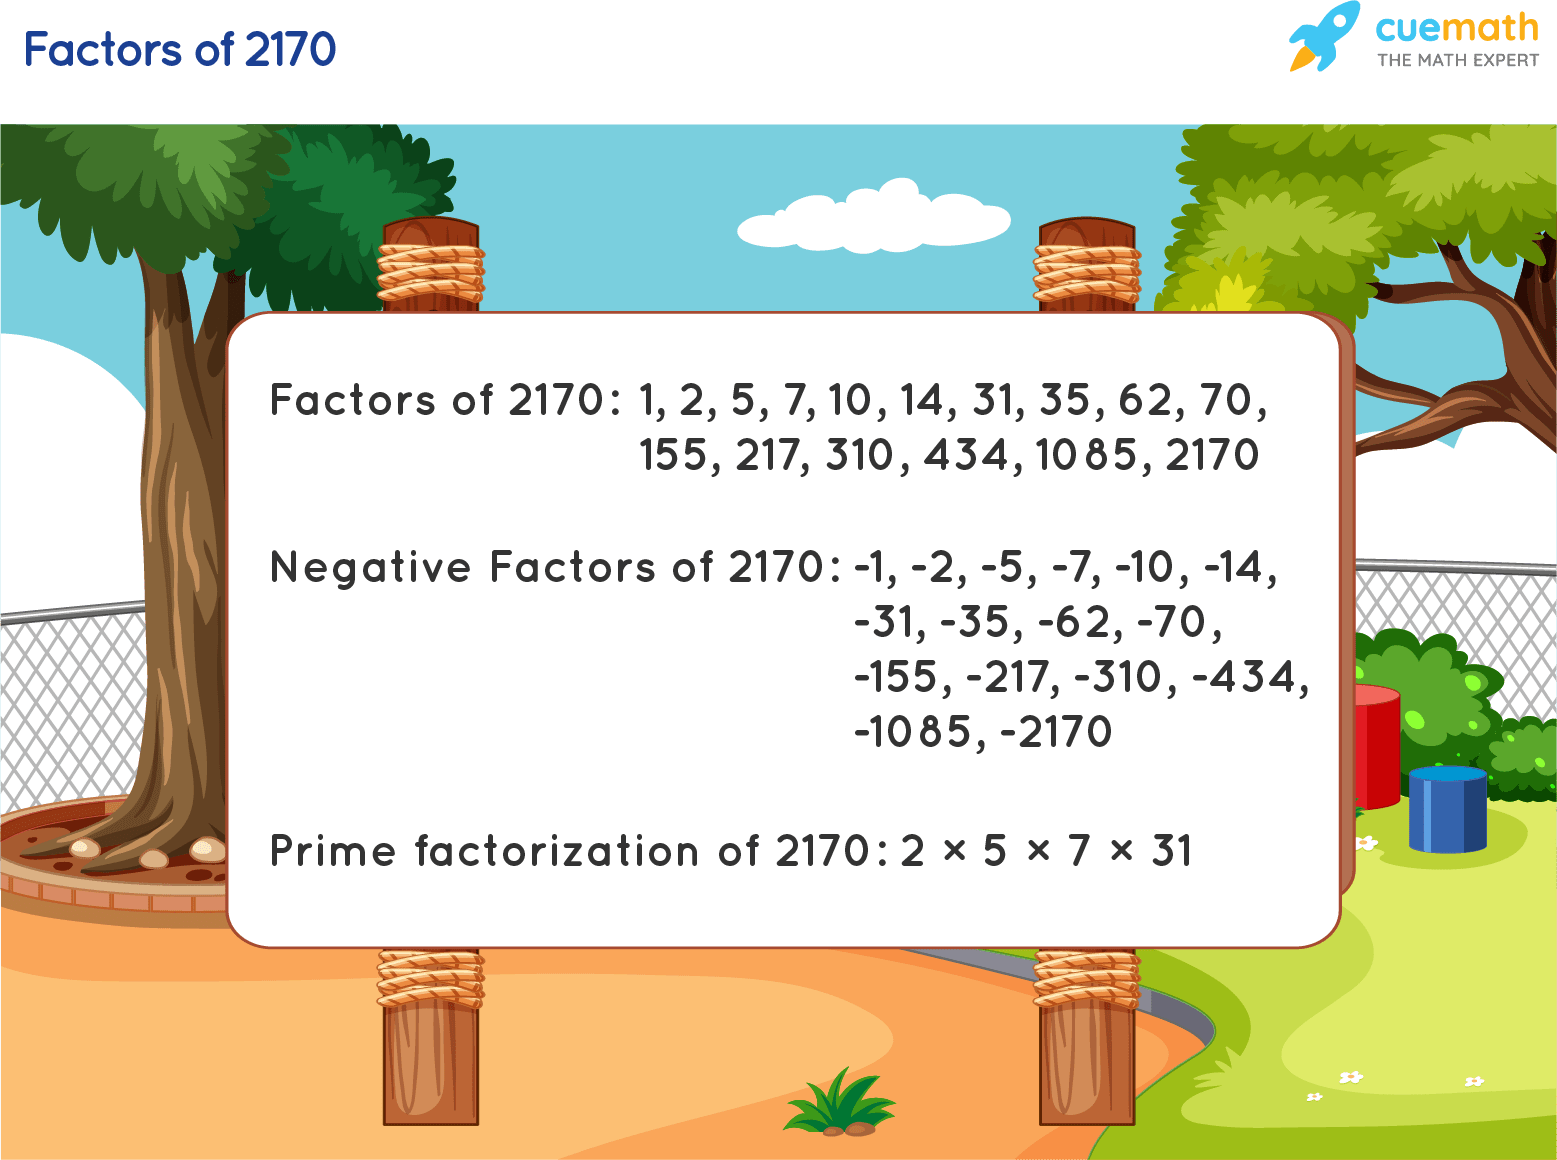 Factors of 2170